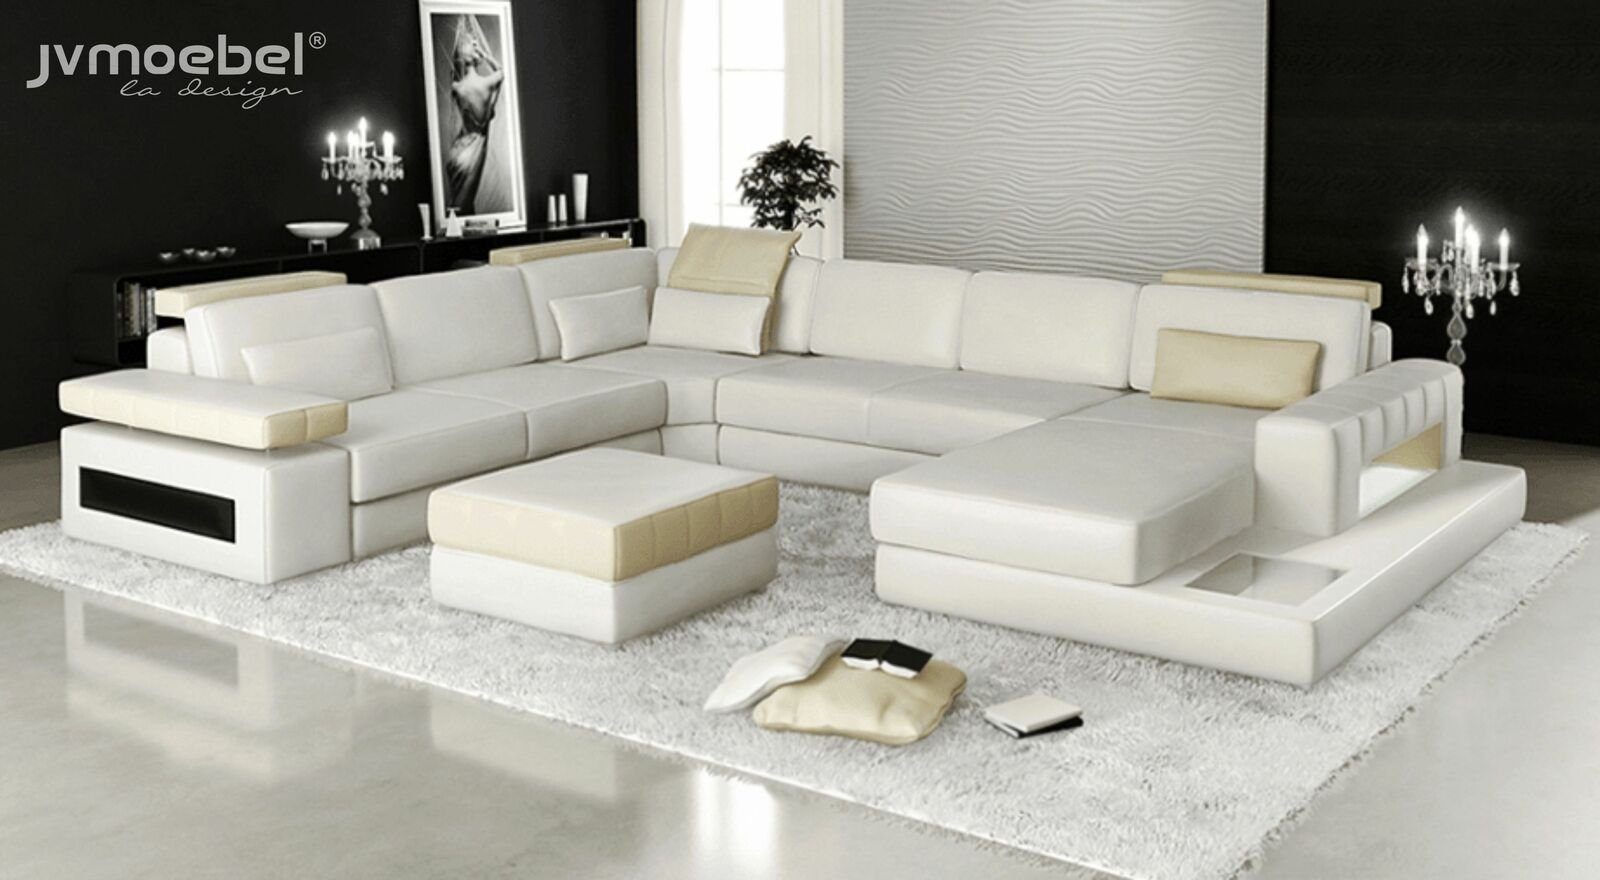 Stoff, JVmoebel Ecksofa in Polster Ecksofa Europe Sofa Made Couch Form Big Leder U Textil